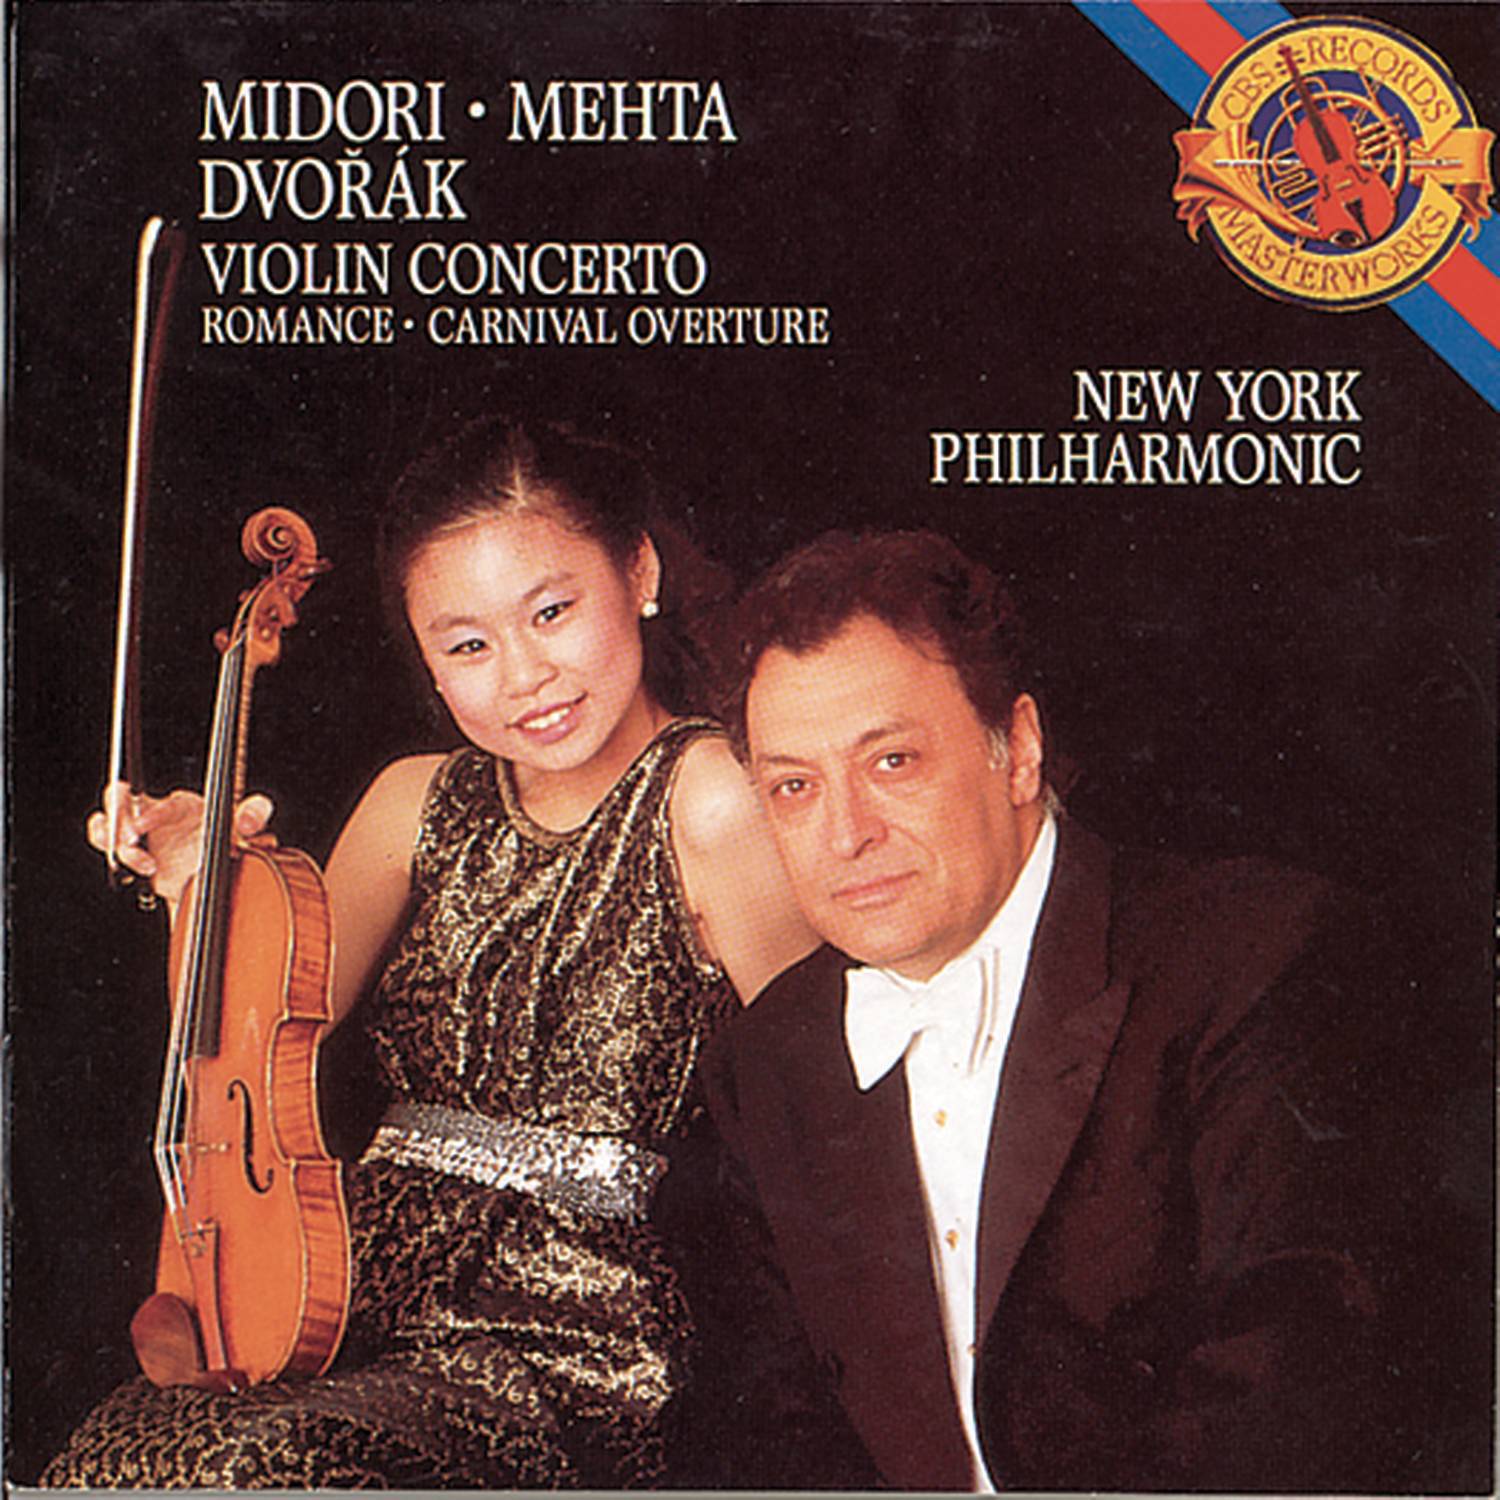 Concerto for Violin and Orchestra in A Minor, Op. 53: I. Allegro ma non troppo